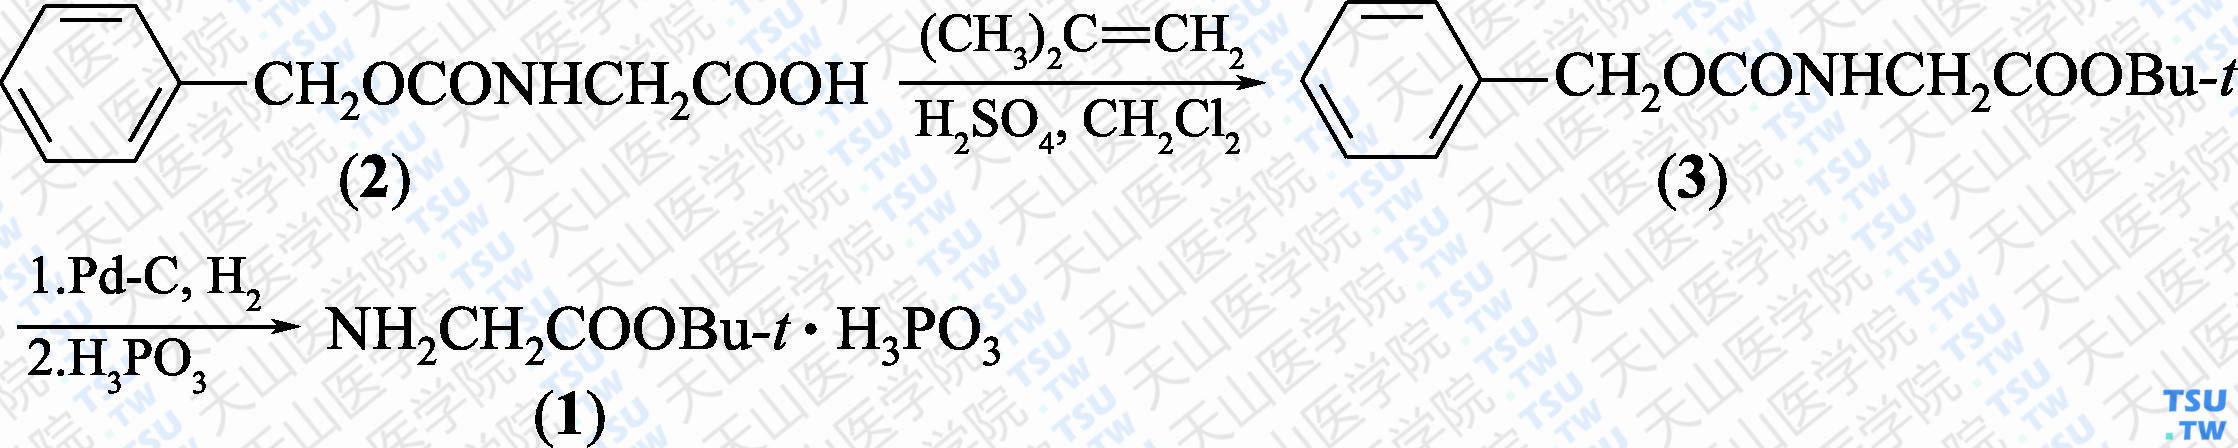 甘氨酸叔丁酯亚磷酸盐（分子式：C<sub>6</sub>H<sub>13</sub>NO<sub>2</sub>·H<sub>3</sub>PO<sub>3</sub>）的合成方法路线及其结构式